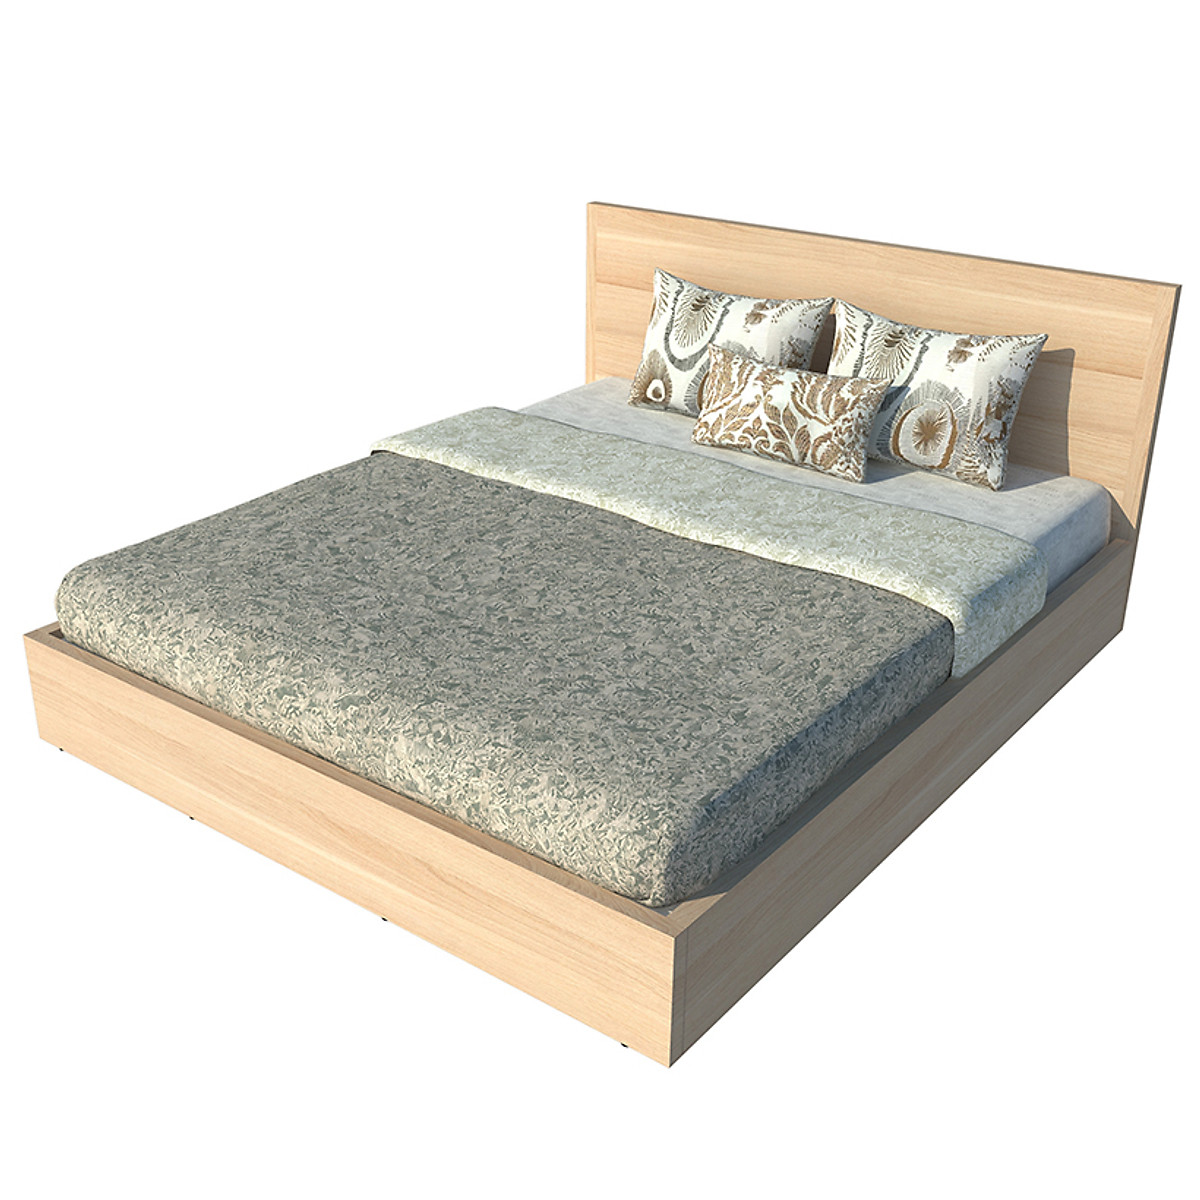 Giường ngủ cao cấp Tundo màu vàng sồi 180cm x 200cm